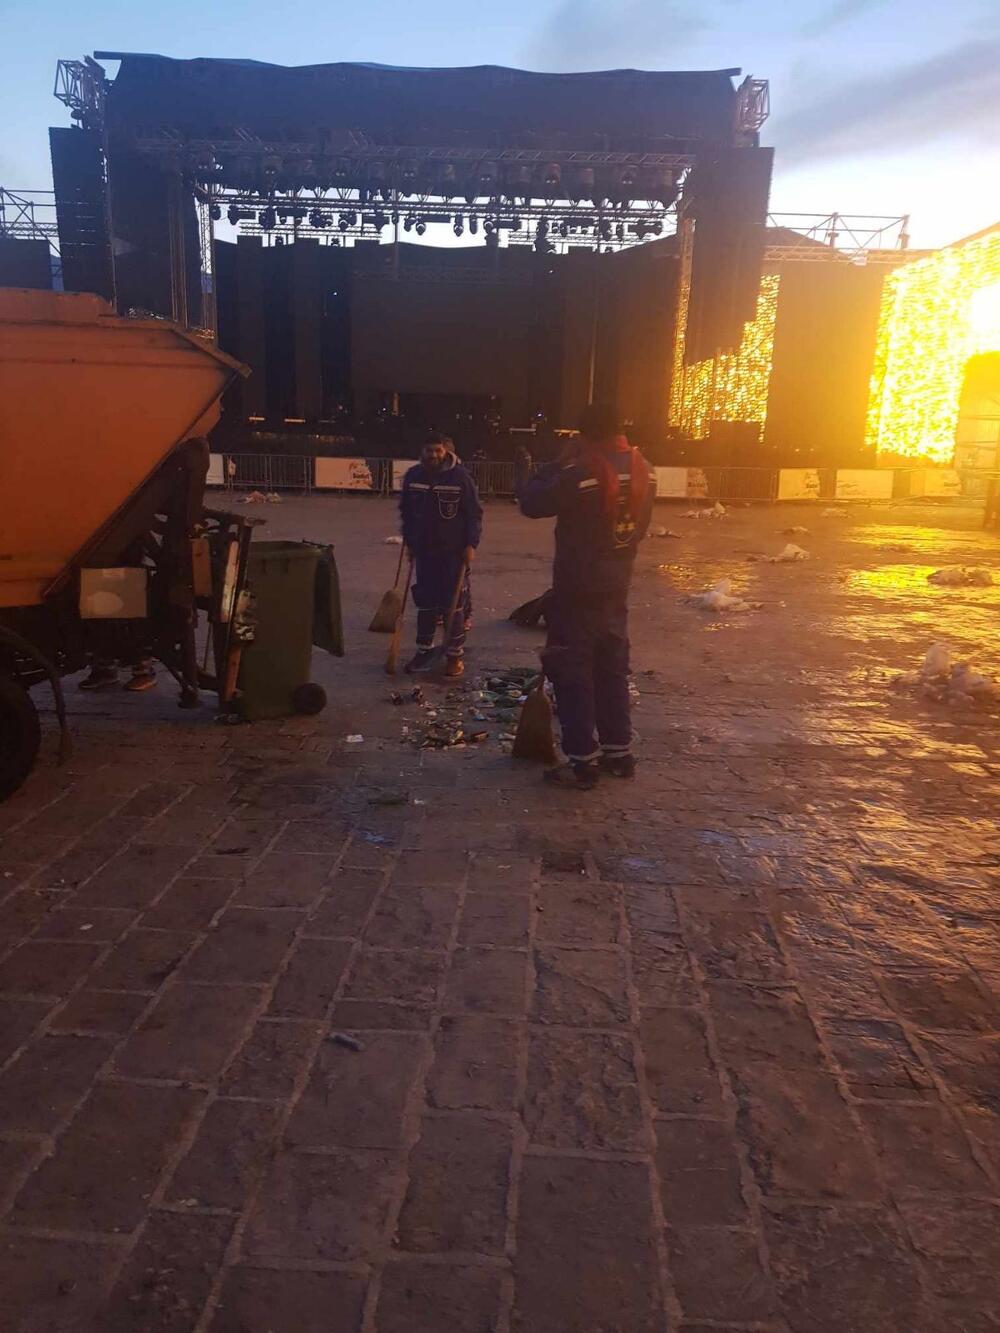 <p>"Nakon održanih koncerta na starogradskom trgu čišćenja smo započinjali u 6 sati izjutra kada smo primjenjivali aktivnosti sakupljanja otpada"</p>